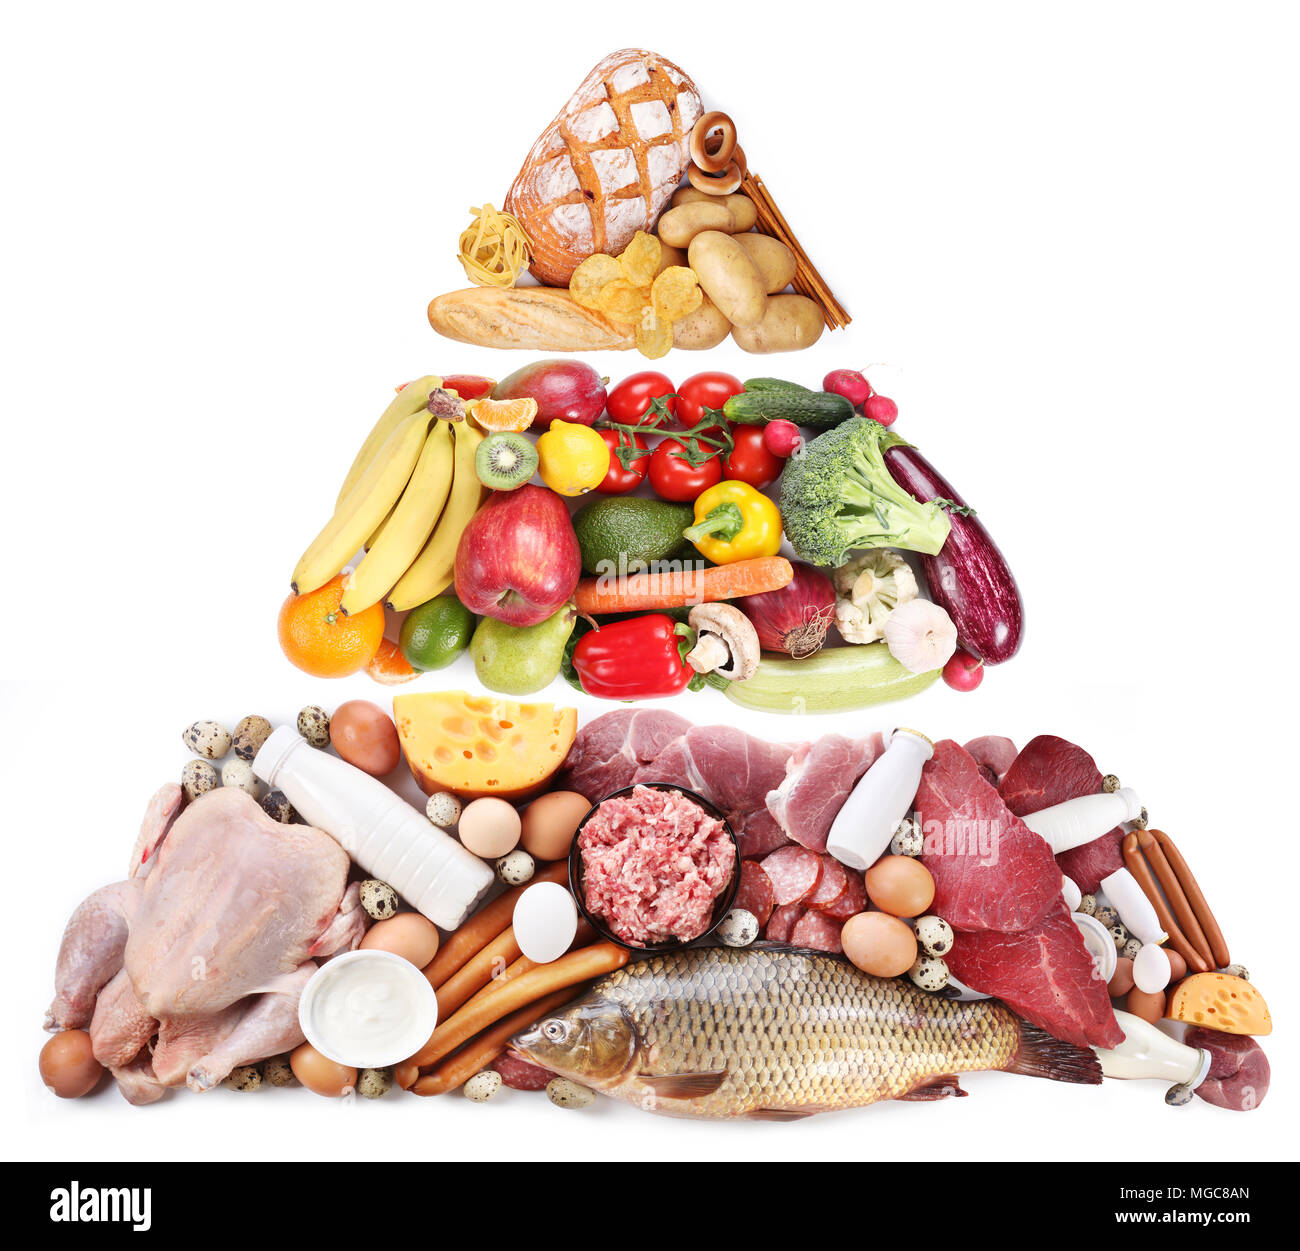 La piramide alimentare o dieta piramide di base presenta gruppi di alimenti. Foto Stock